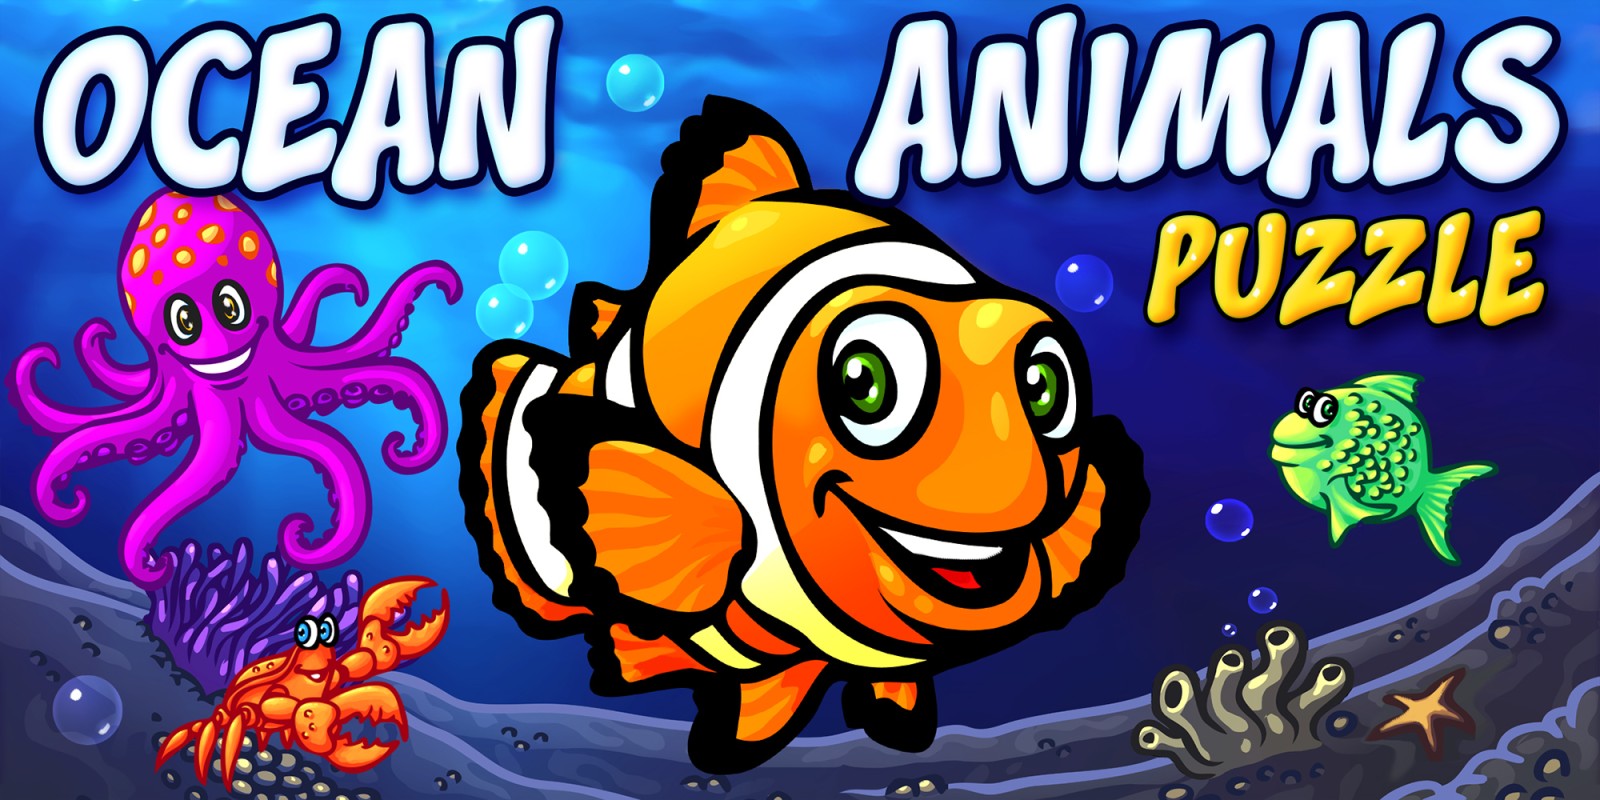 Ocean Animals Puzzle - дошкольная головоломка с морскими животными, обучающая игра с животными, пазлы для детей и малышей